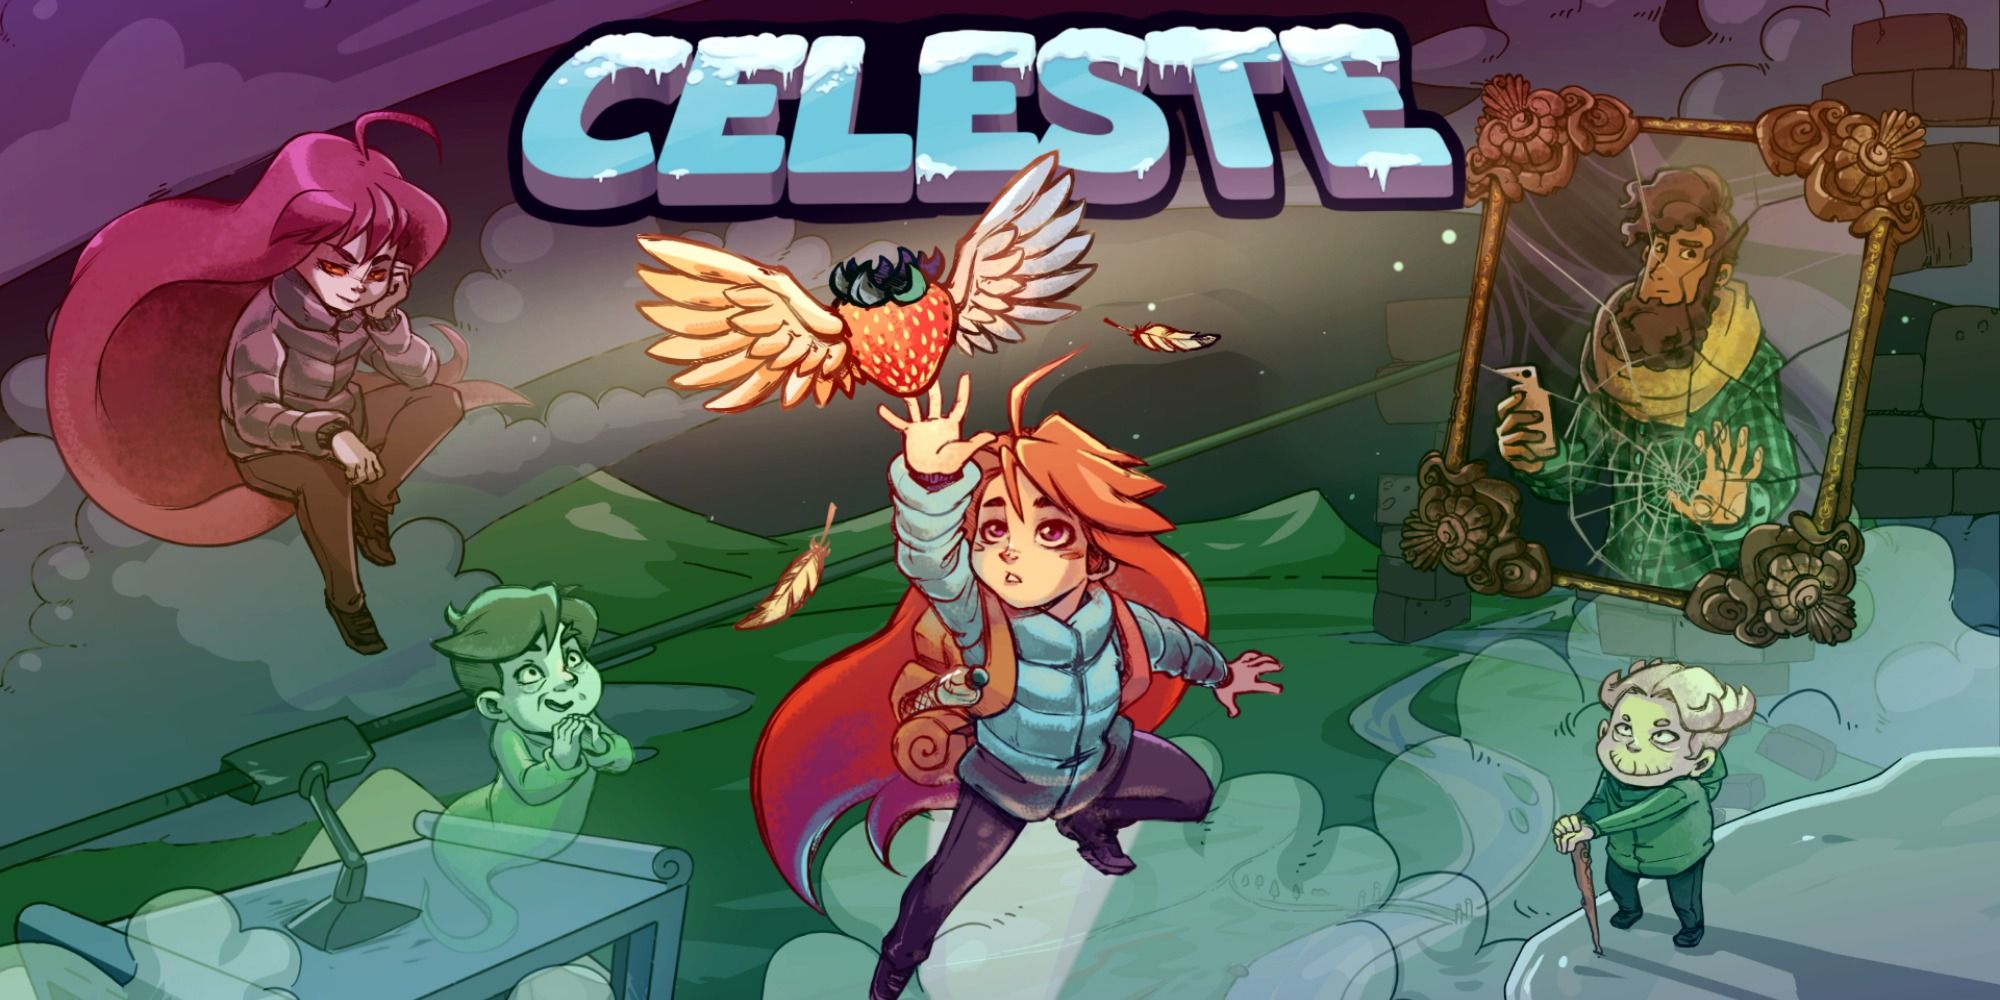 Pavadinimo paveikslėlis Celeste, kuriame Madeline siekia braškę su sparnais, o pagalbiniai veikėjai sklando rūke aplink ją